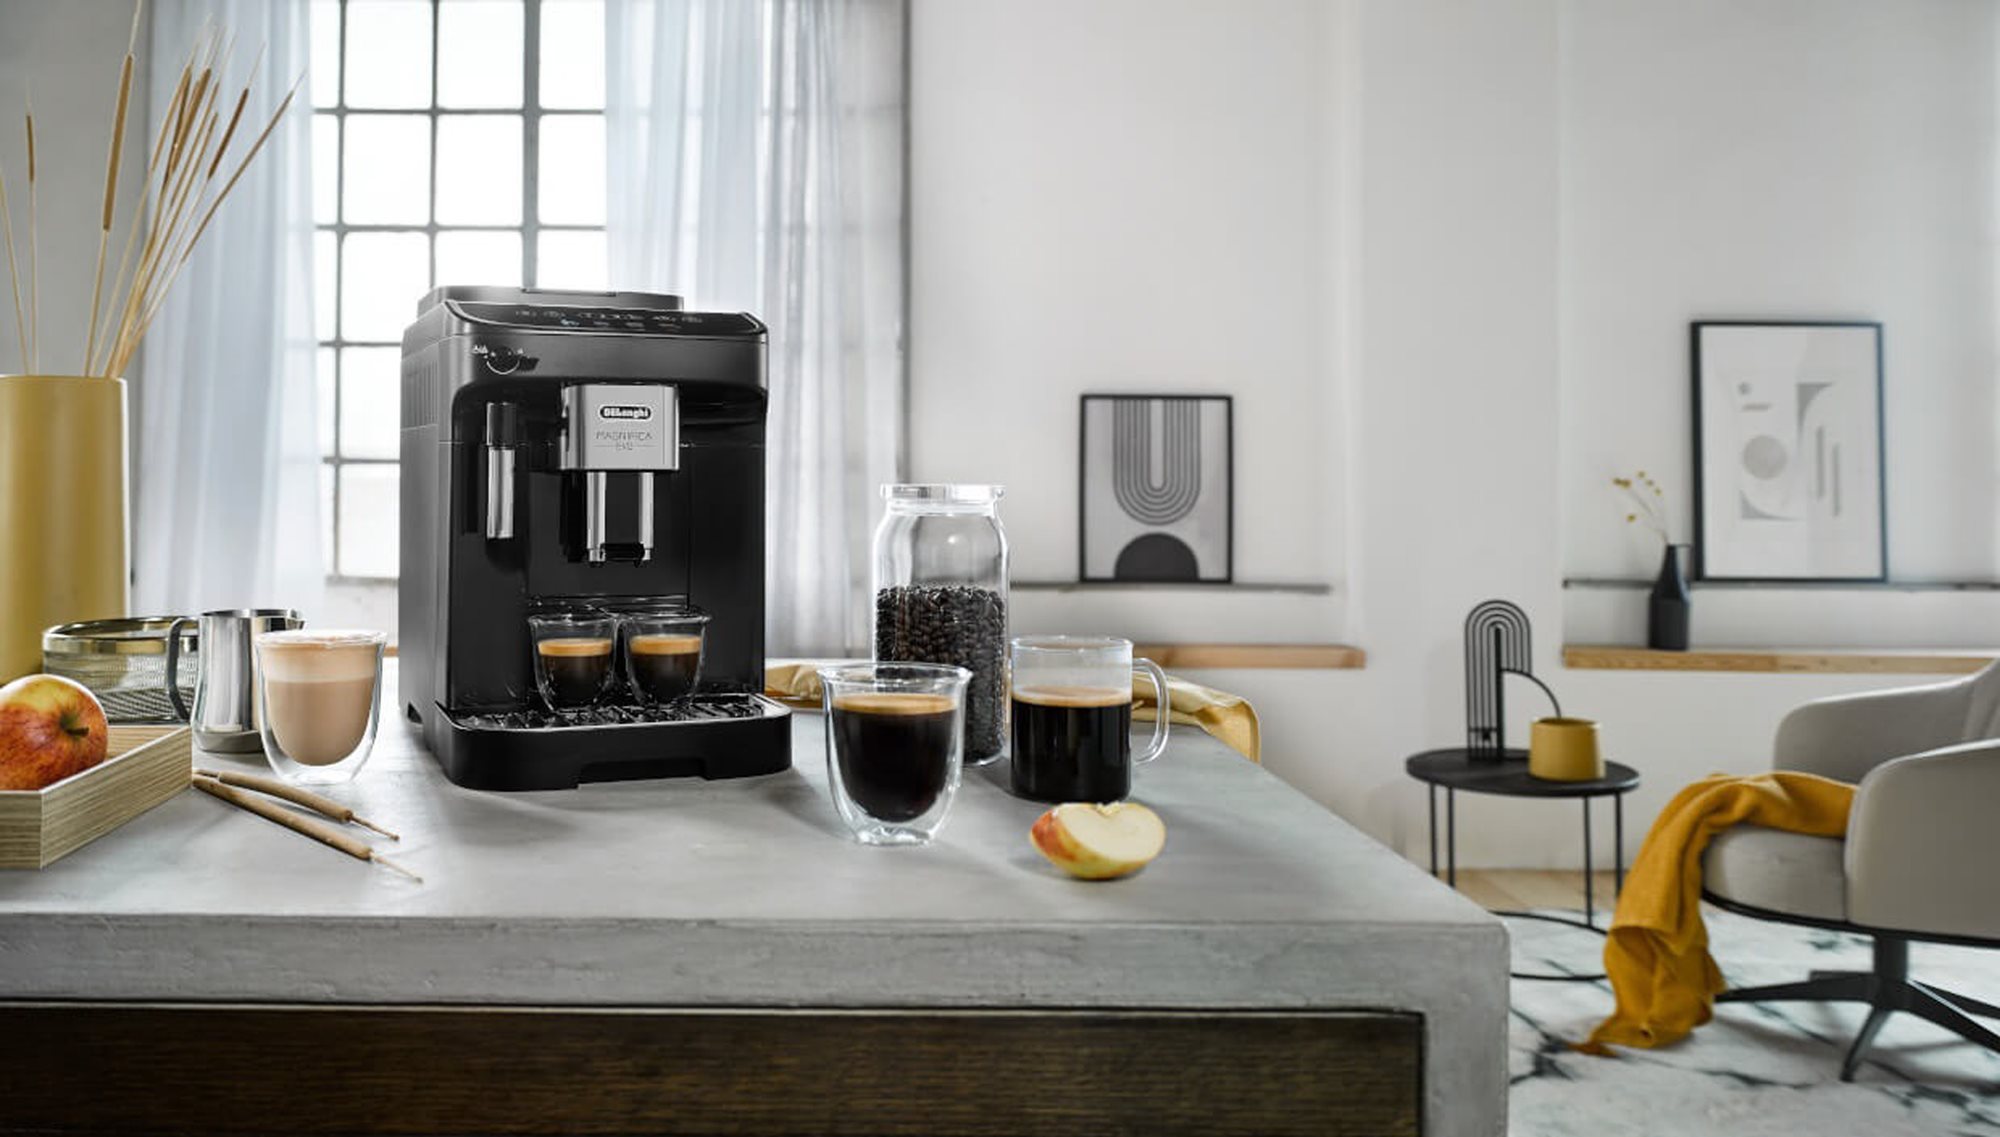 Machine espresso automatique, Magnifica Evo A, DeLonghi — Boutique